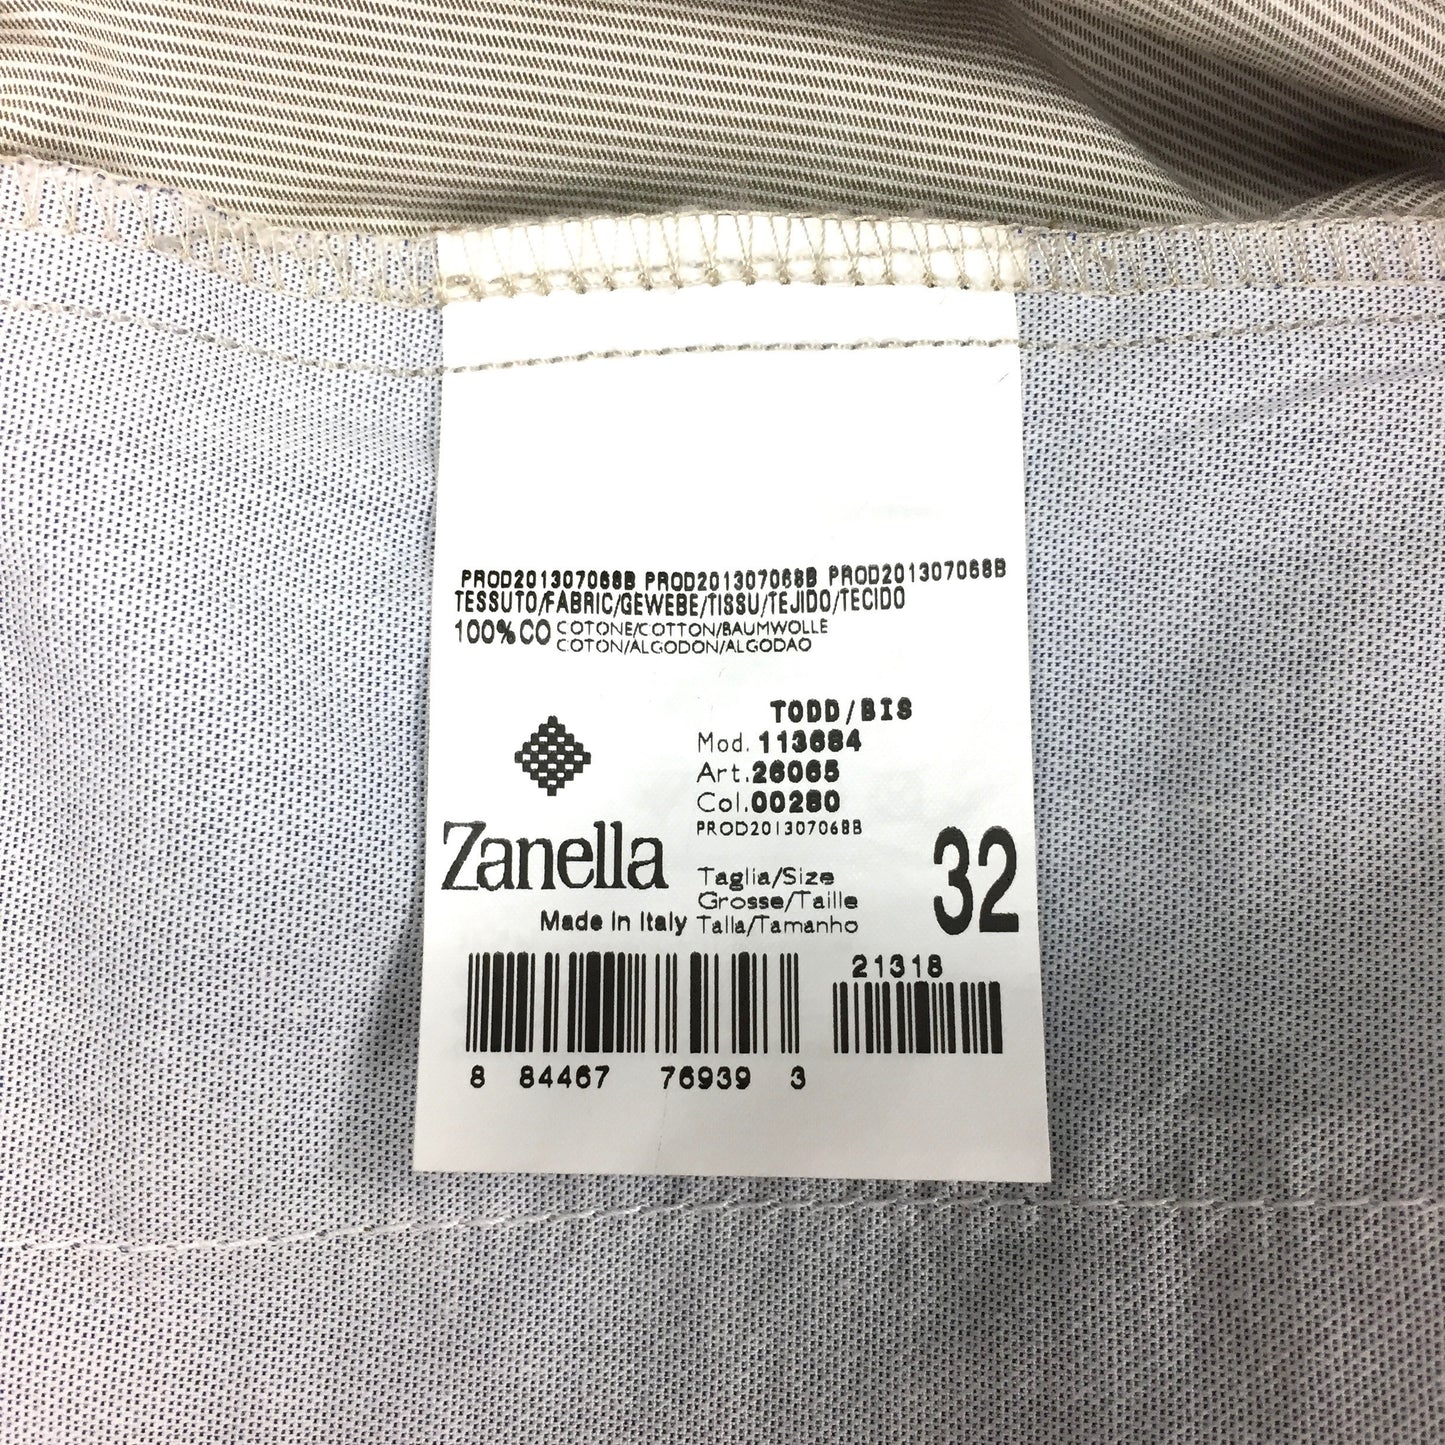 Zanella - Brown & White Striped Pants